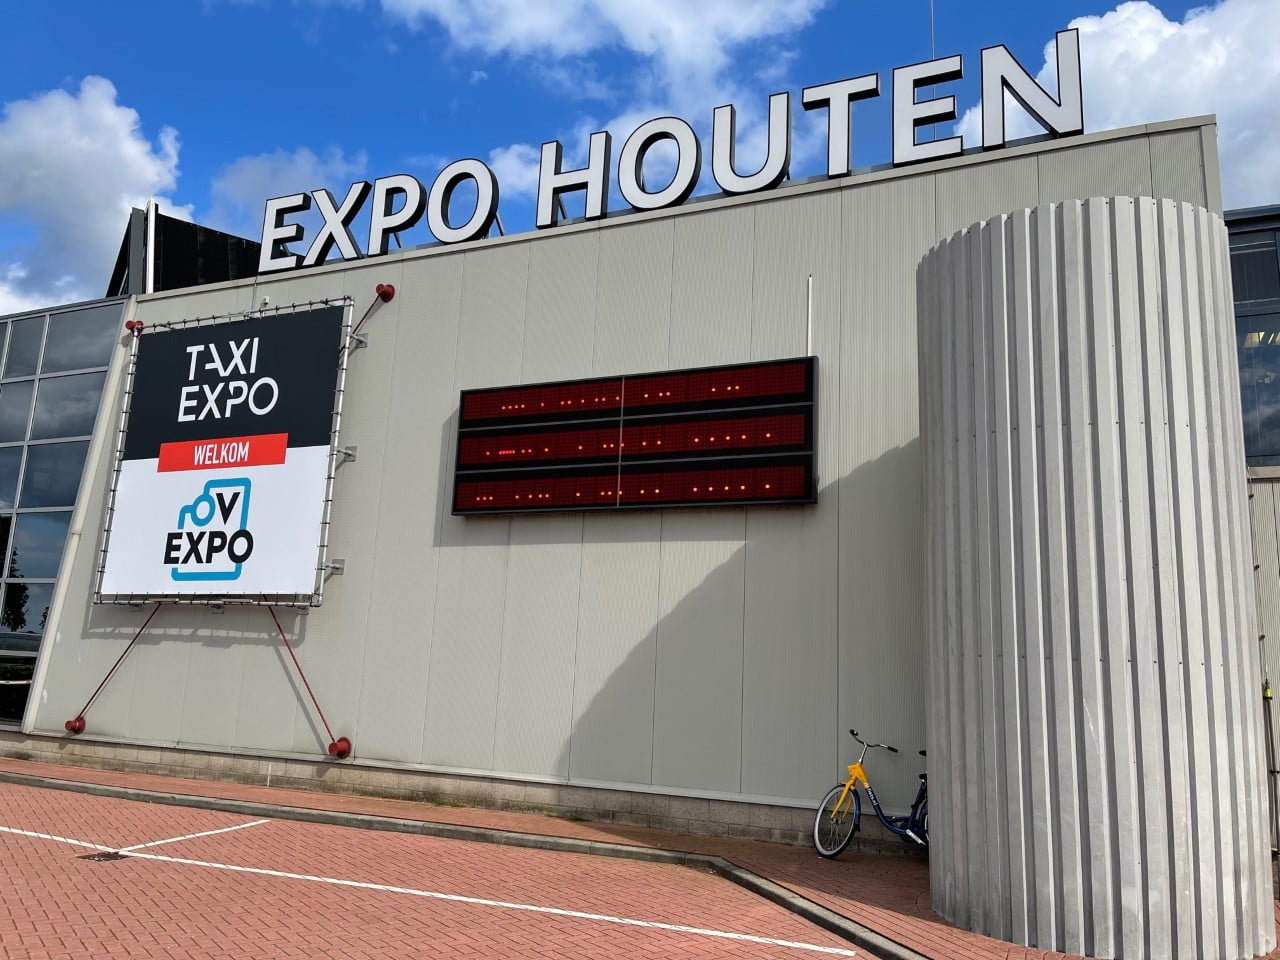 Taxi Expo, et spesielt møtested